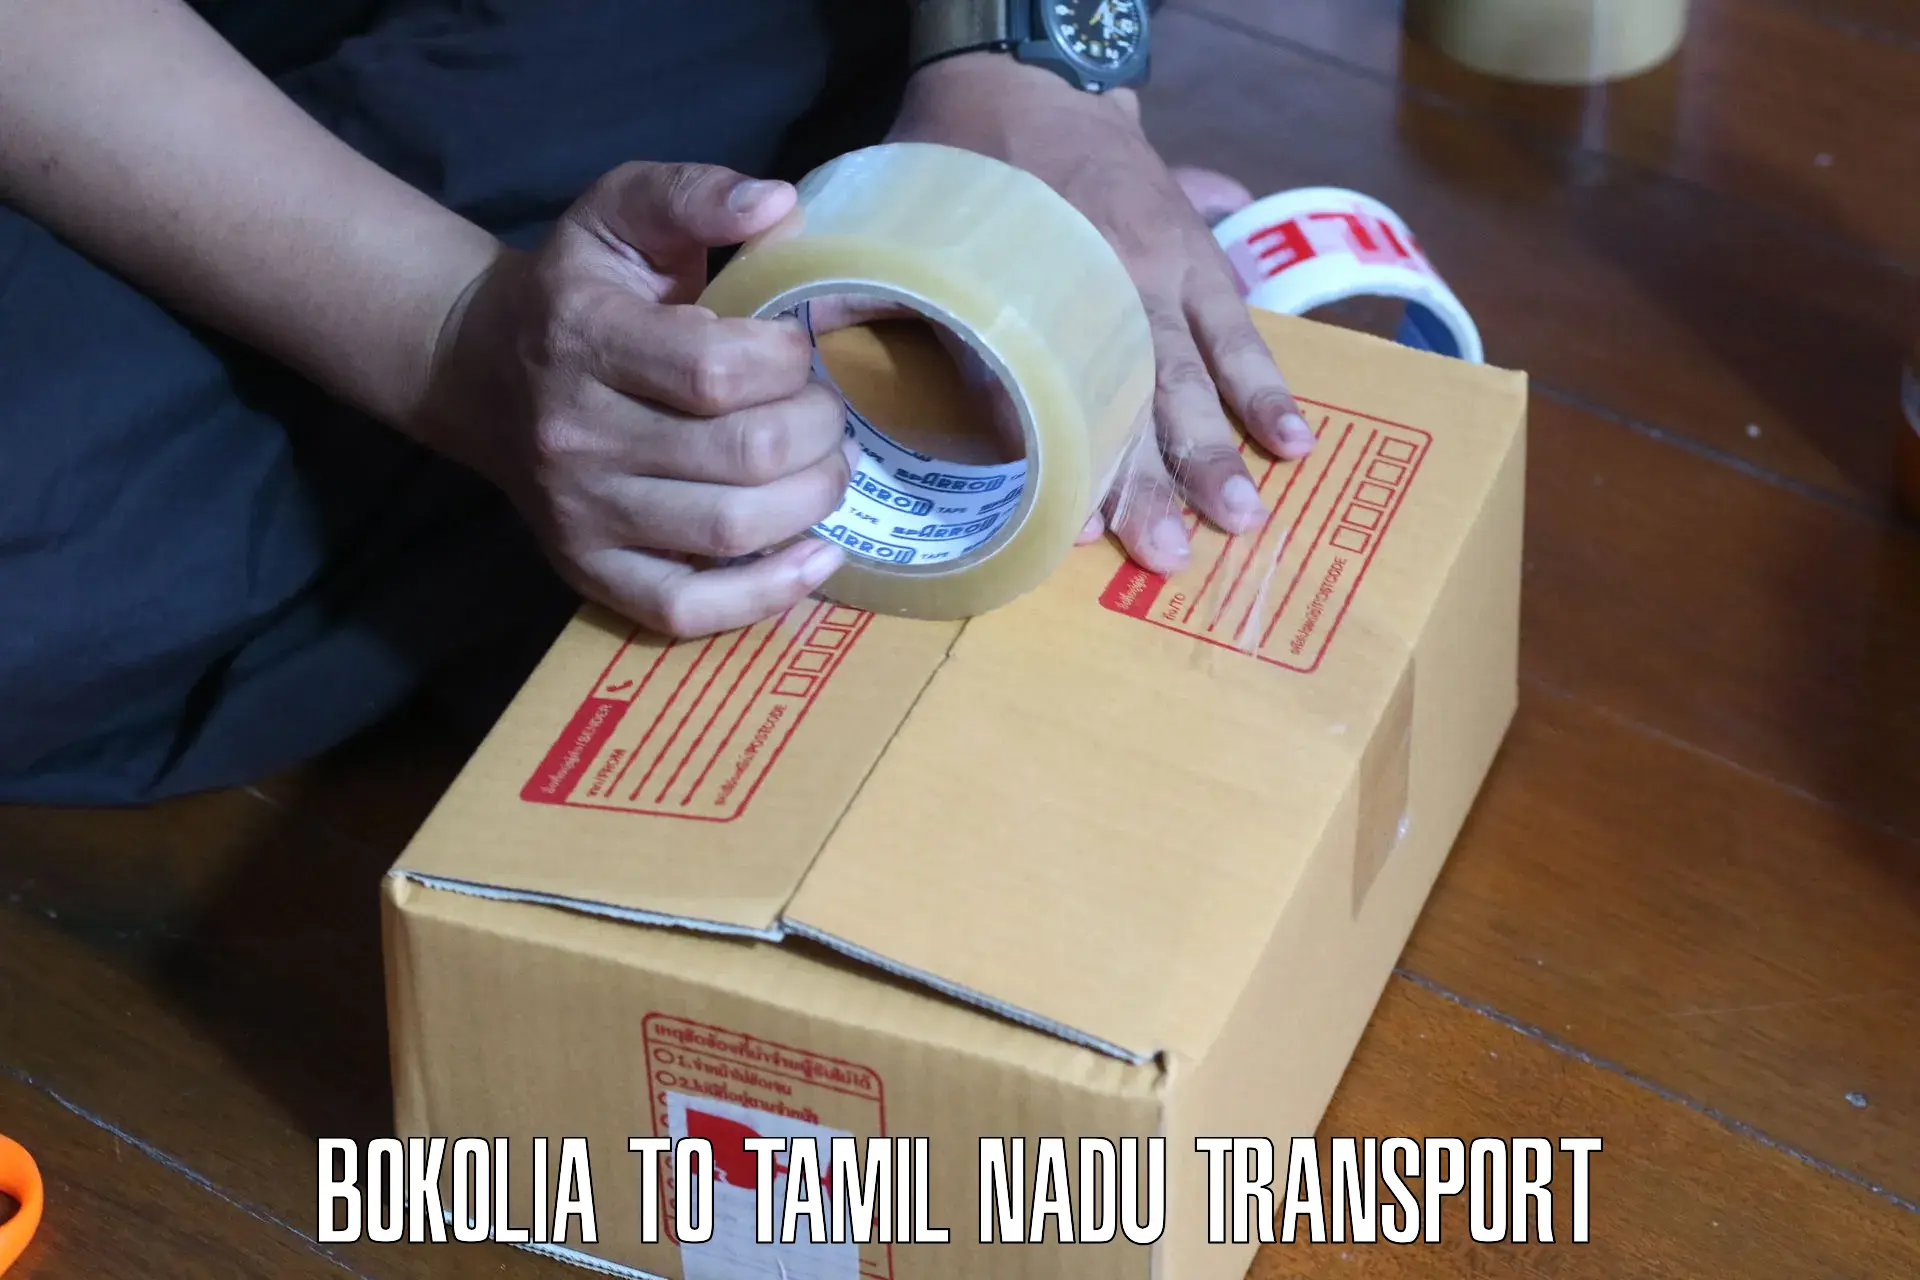 Daily transport service in Bokolia to Vilathikulam